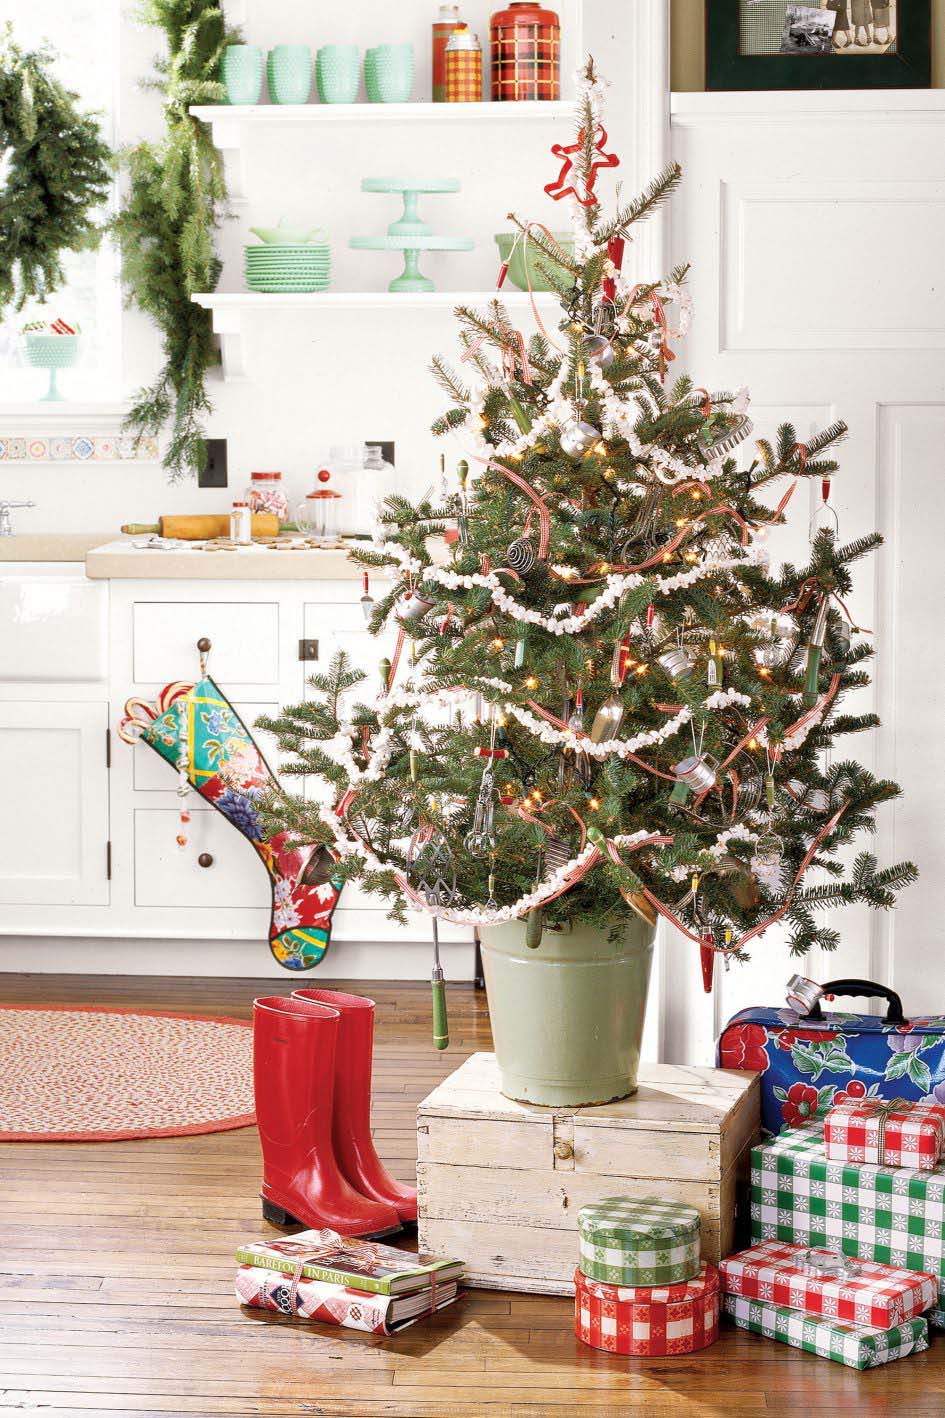 Hình ảnh cây thông Noel được trang trí trong nhà